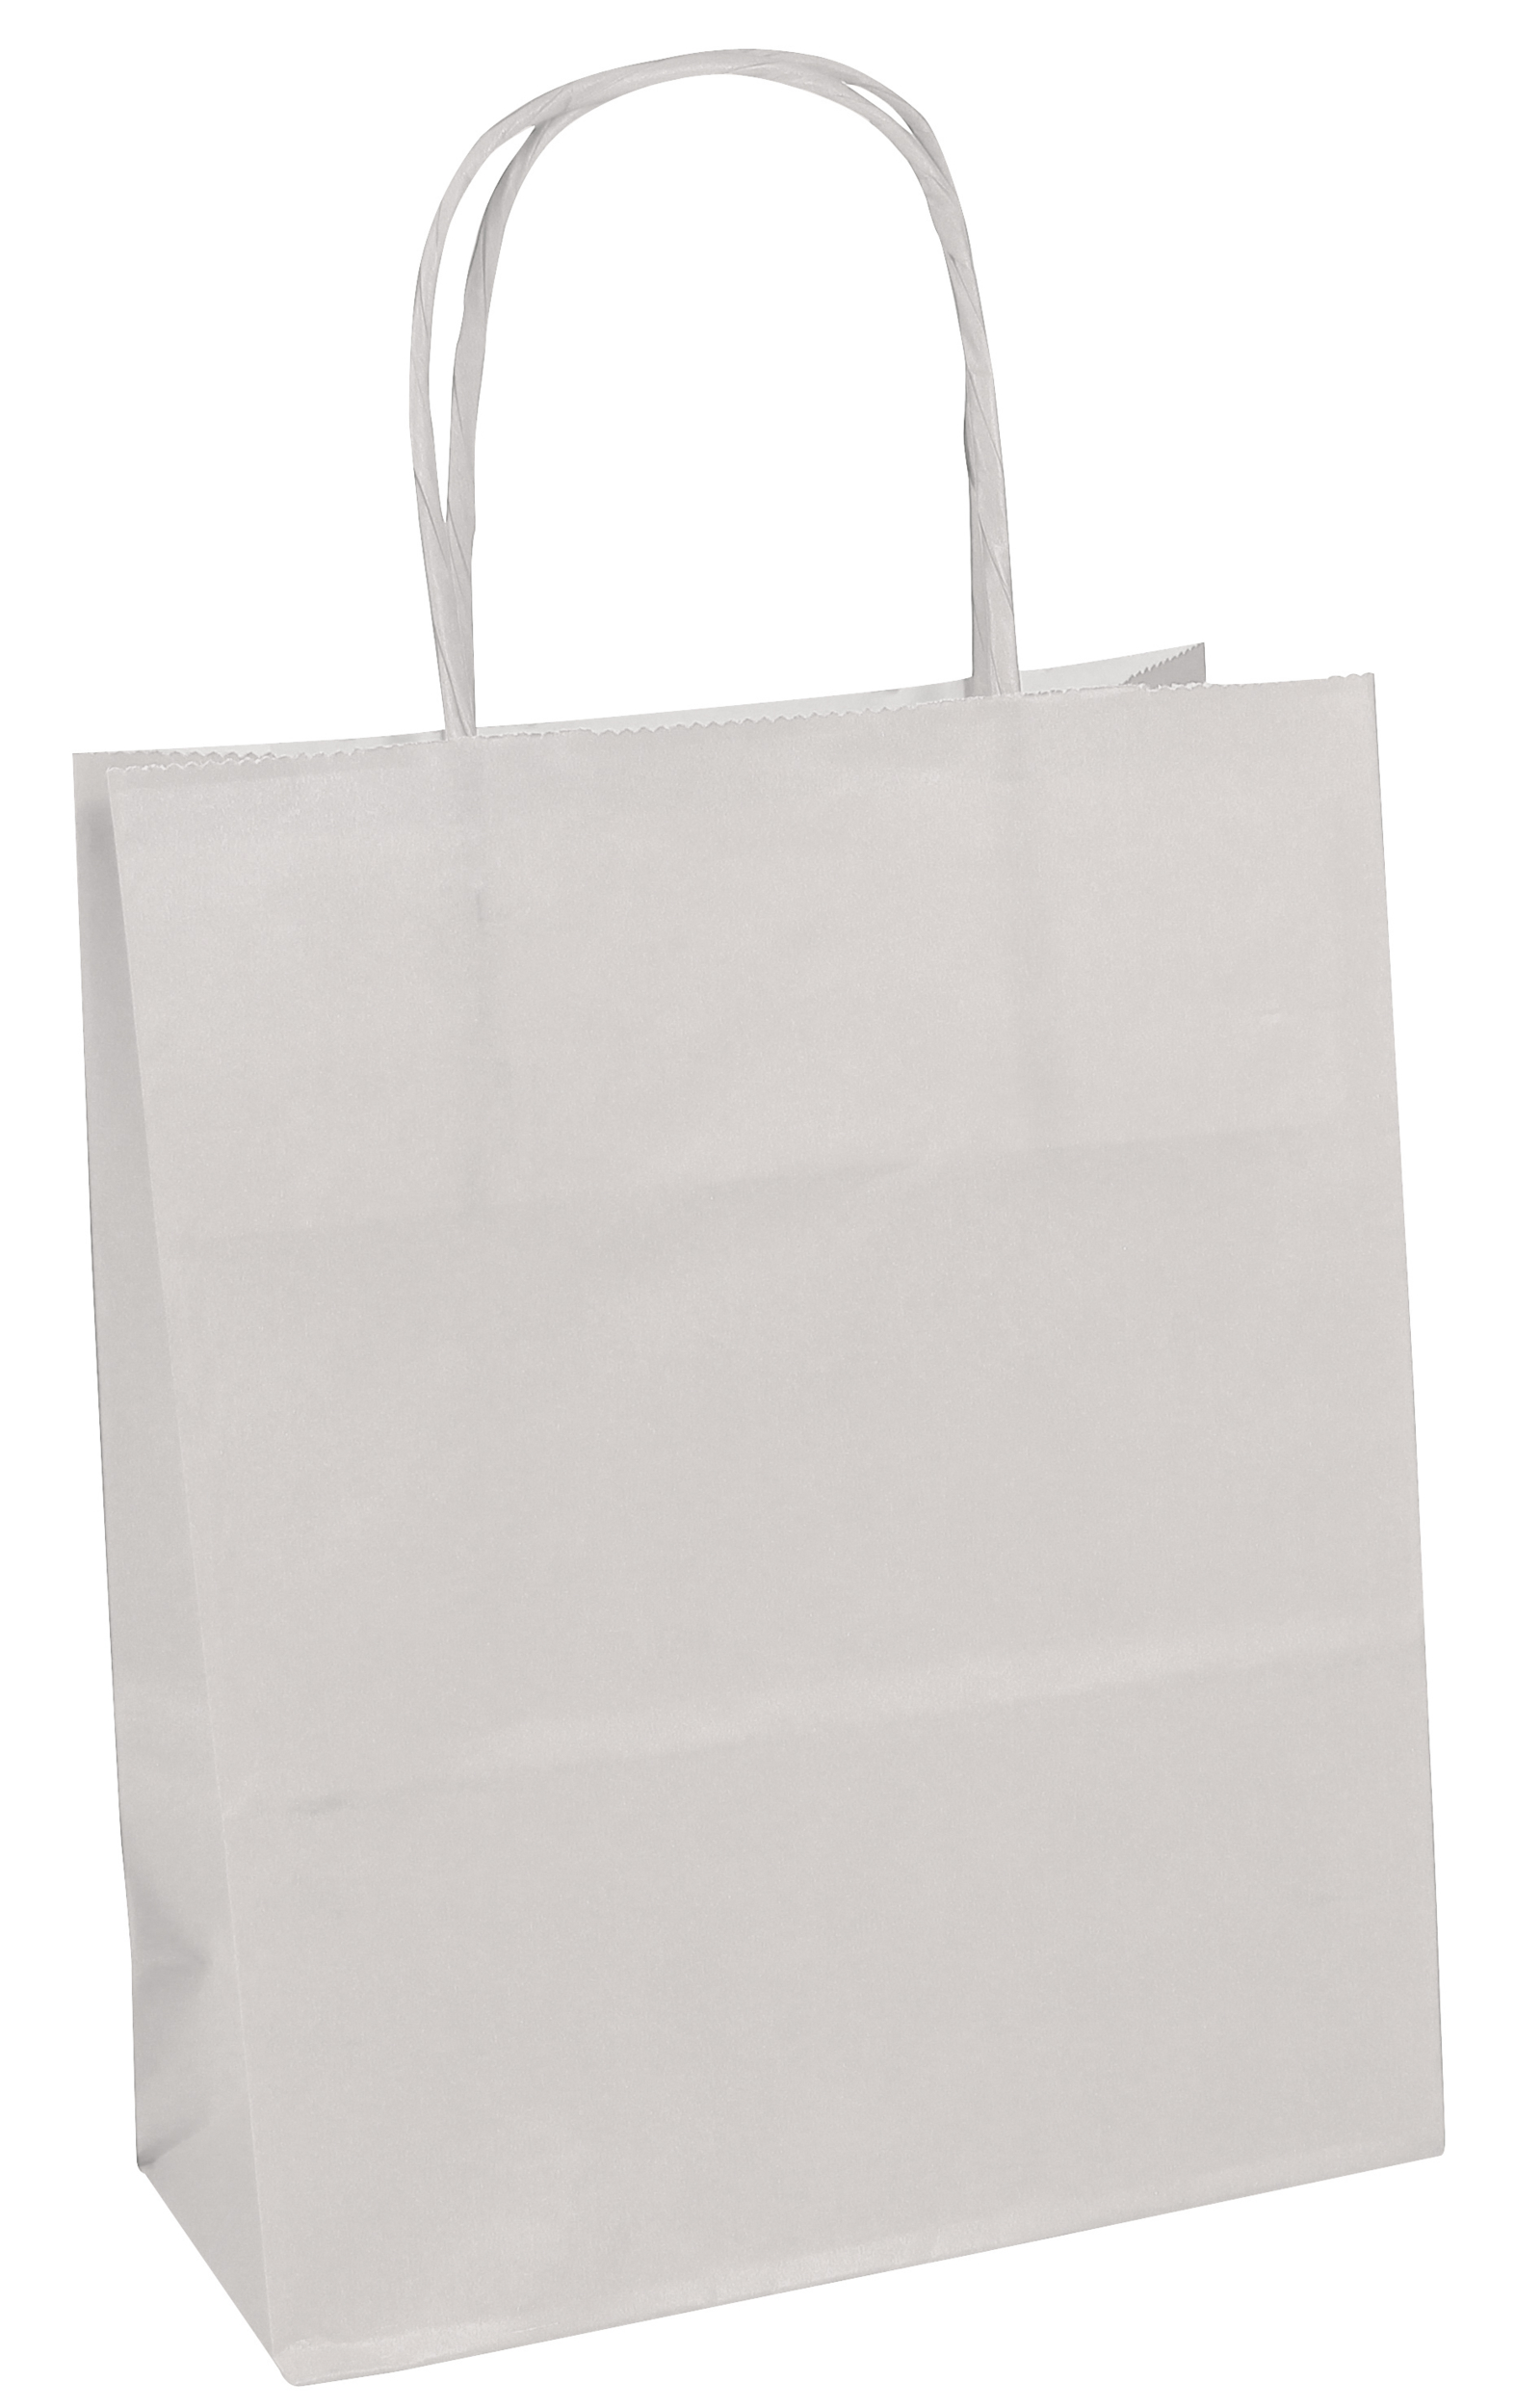 Thepaperbagstore 5 Petit Sacs en Papier avec Poignées Torsadées pour Cadeaux et Fêtes 180x220x80mm Blanc 